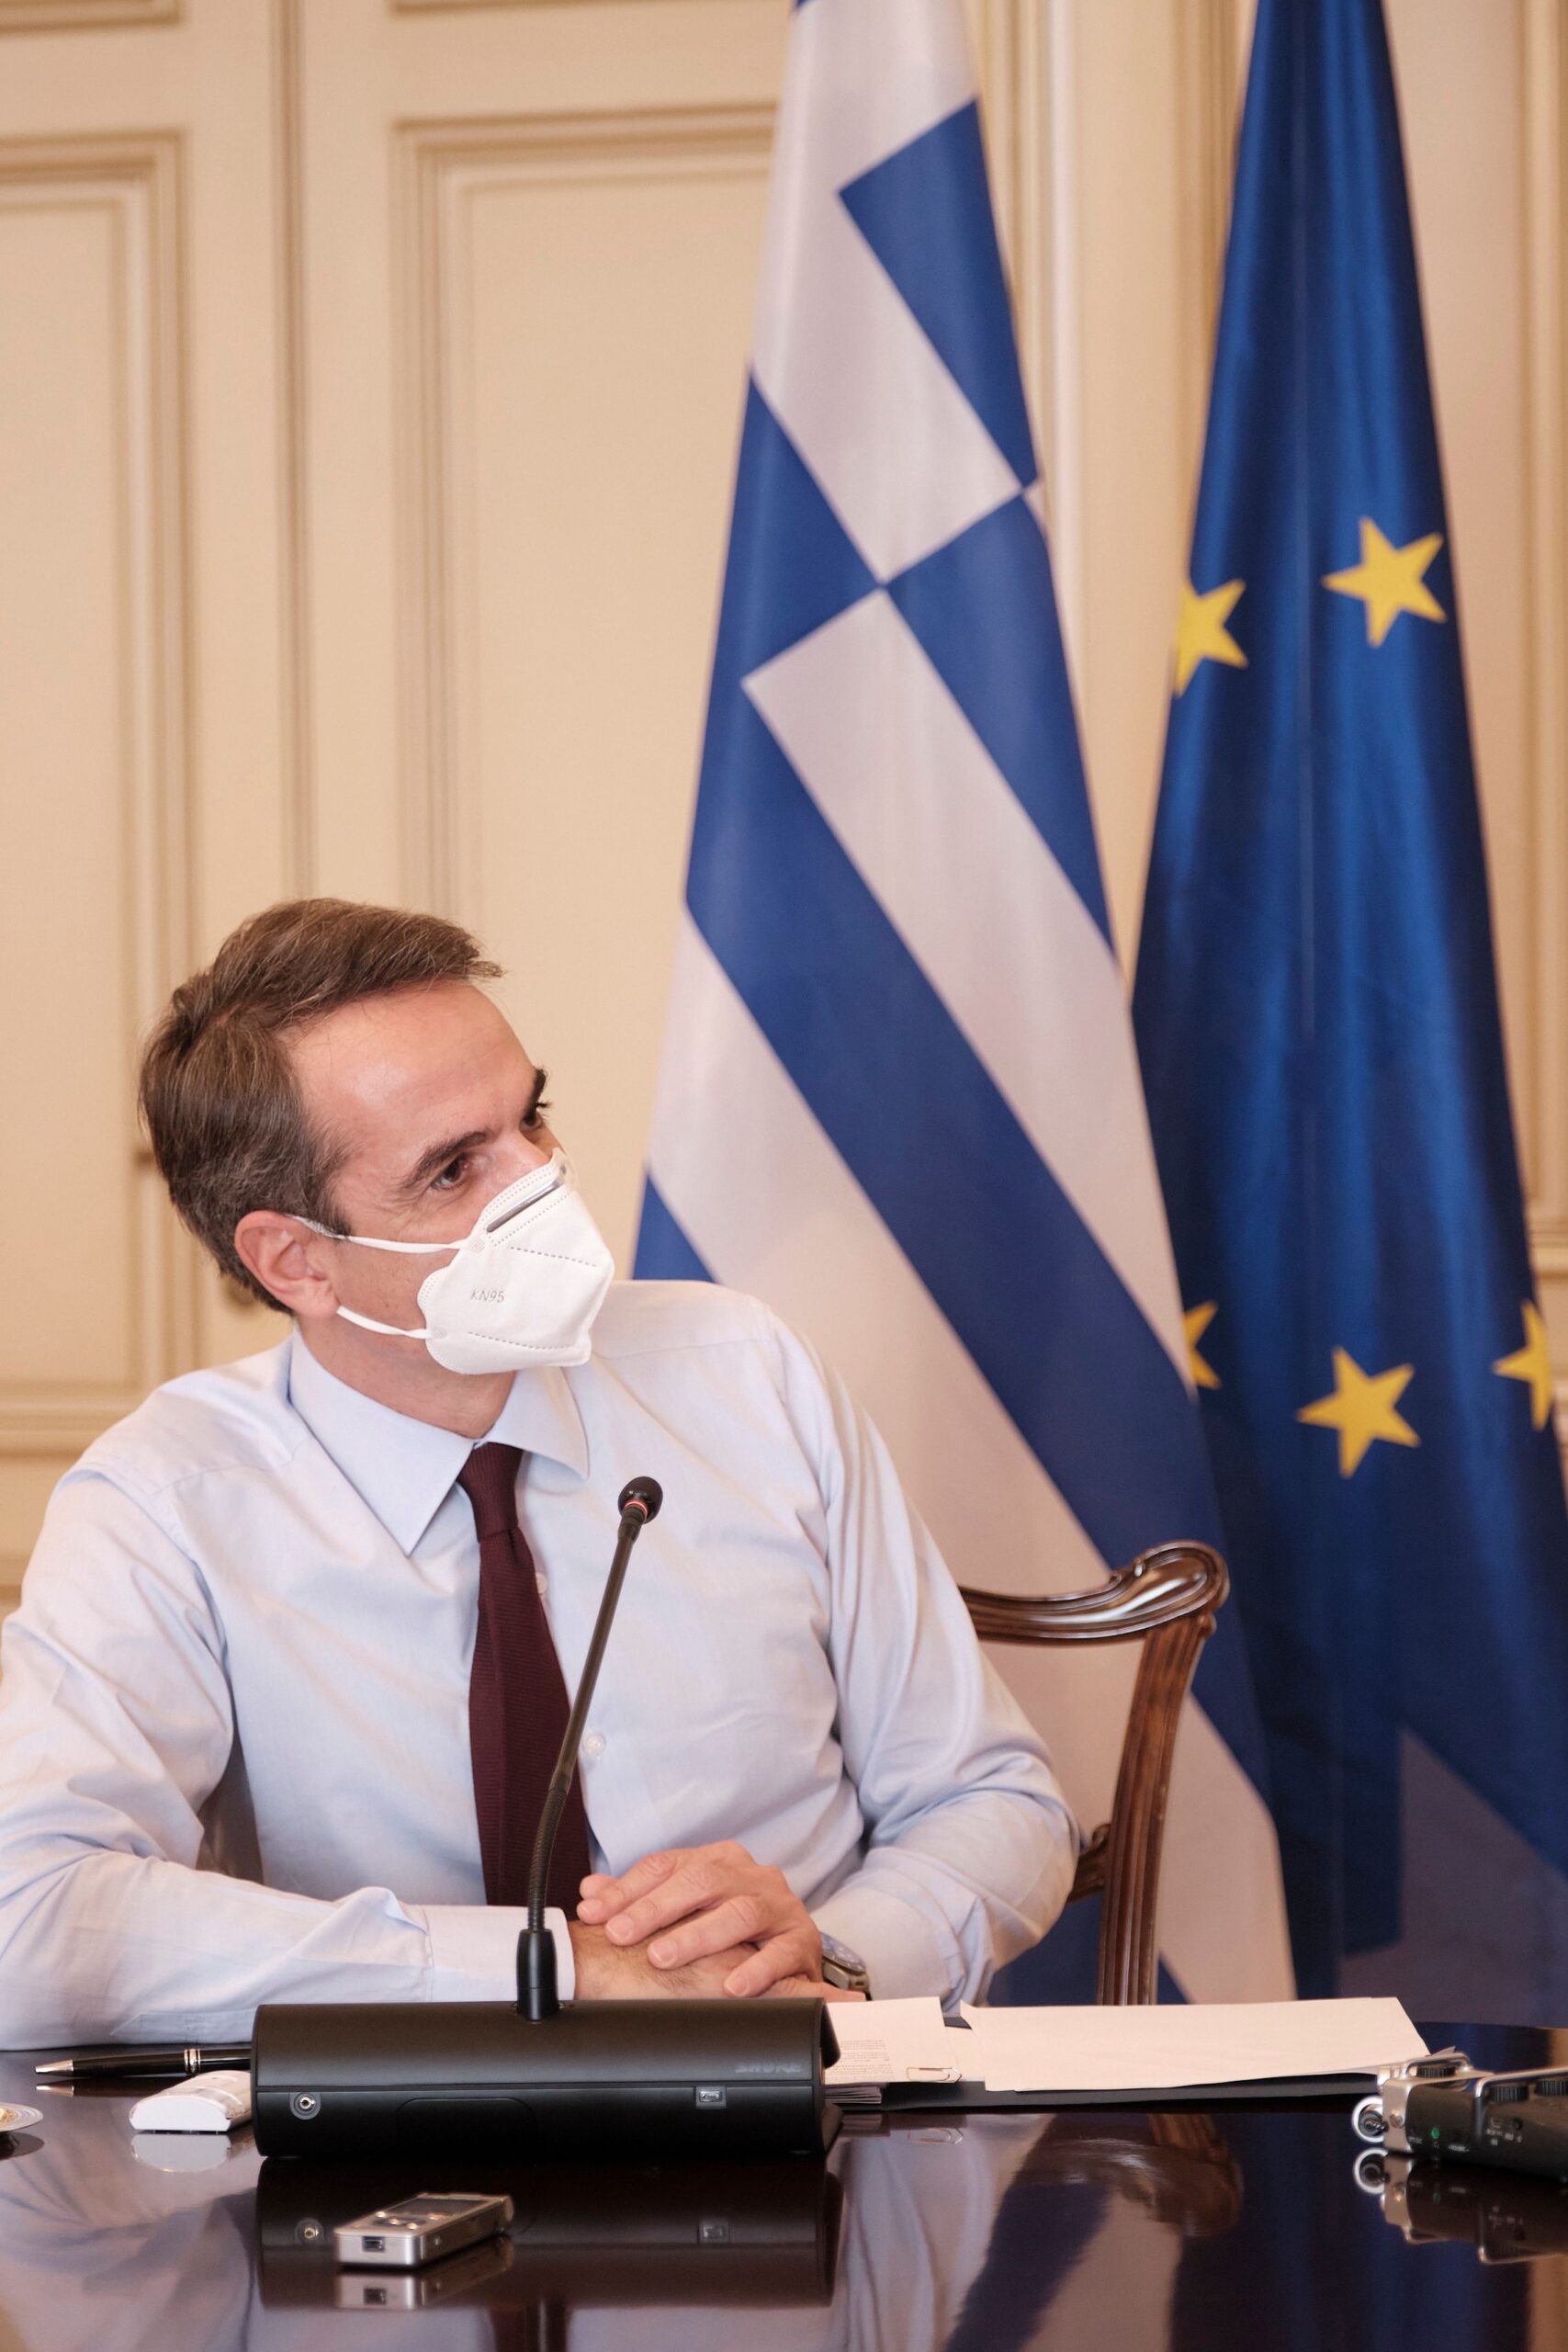 Μητσοτάκης: Στις αρχές Ιανουαρίου ο εμβολιασμός στην Ελλάδα – Ανακοινώνεται σήμερα τι δεν θα λειτουργήσει μέχρι τις αρχές Ιανουαρίου